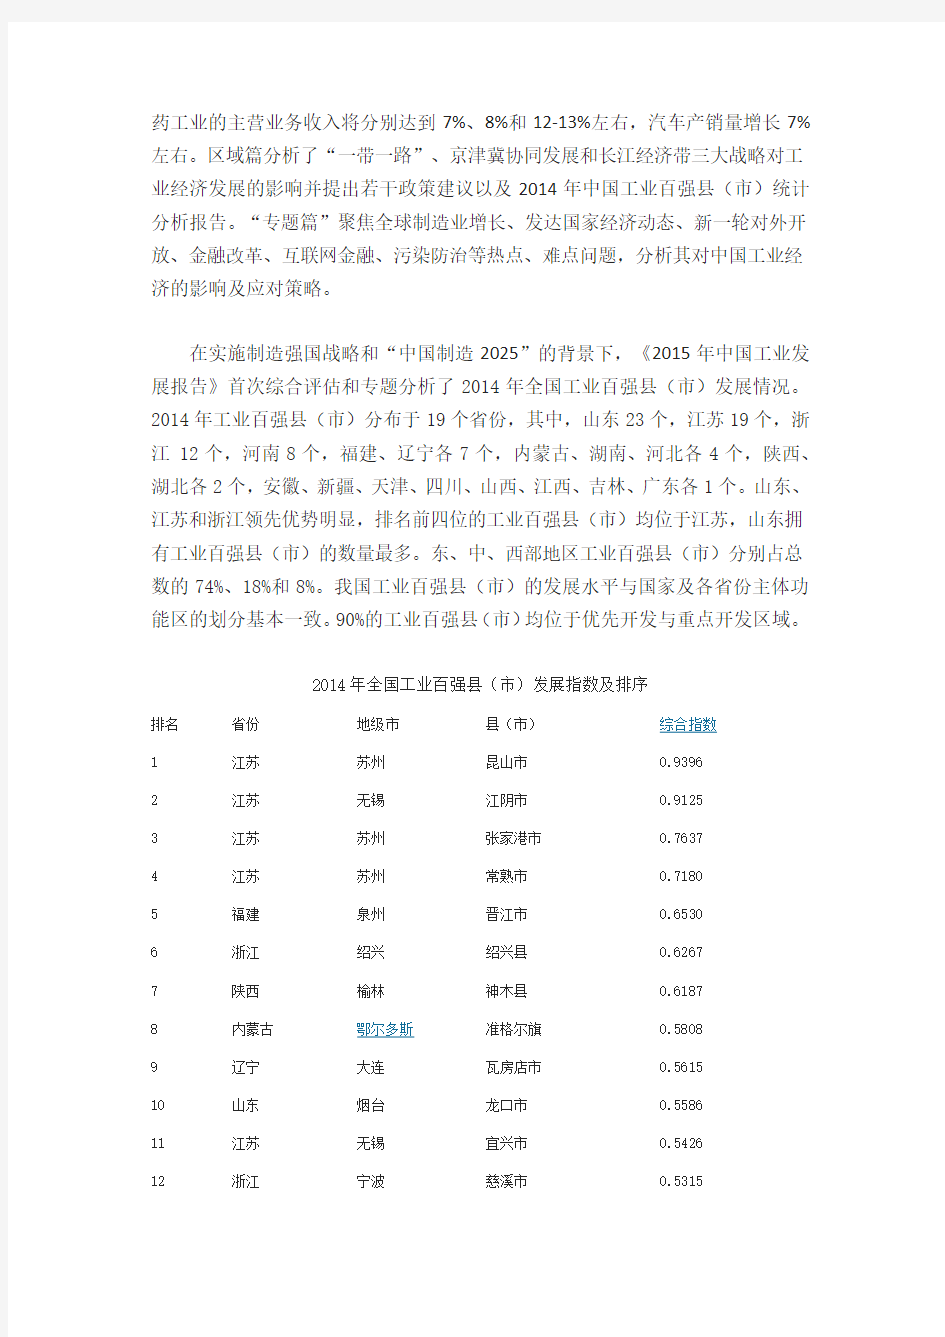 2015年中国工业发展报告-百强县(市)名单